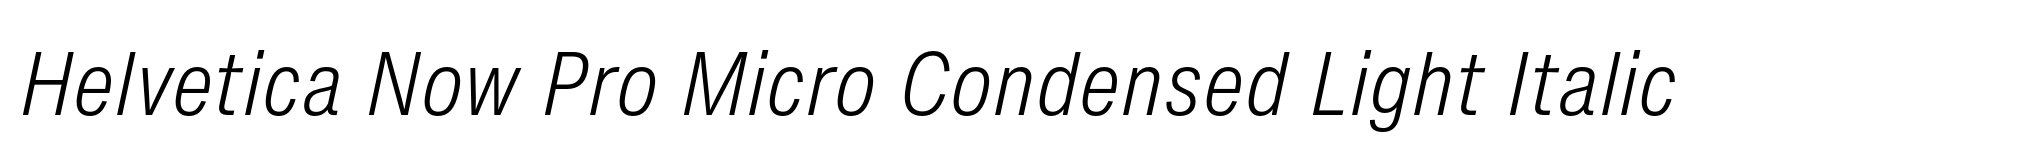 Helvetica Now Pro Micro Condensed Light Italic image